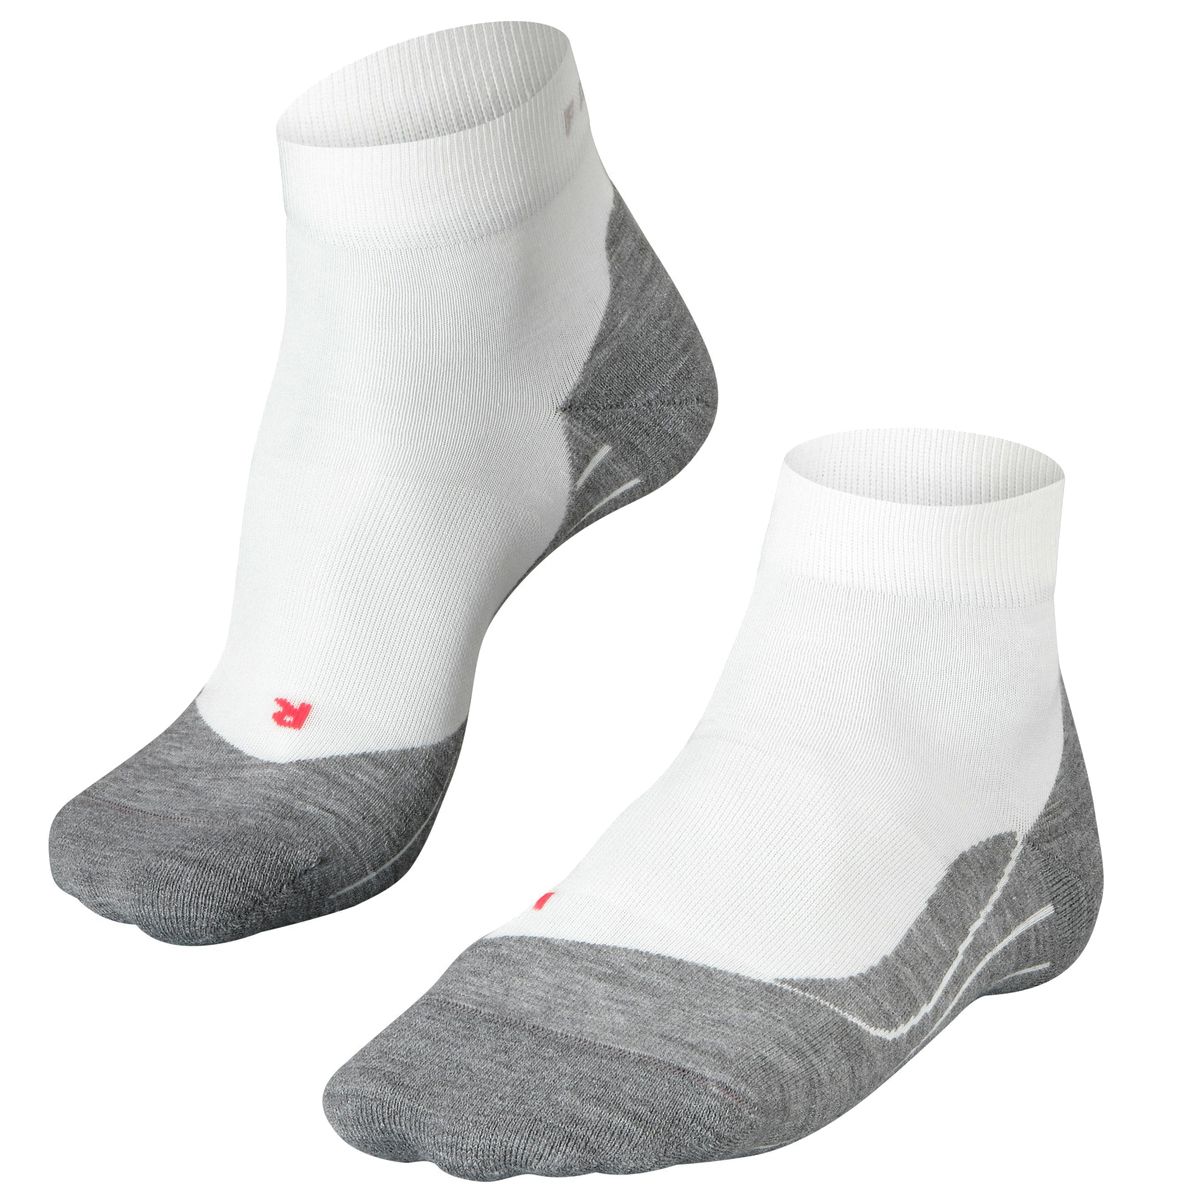 RU4 Short Men's Running Socks white-mix